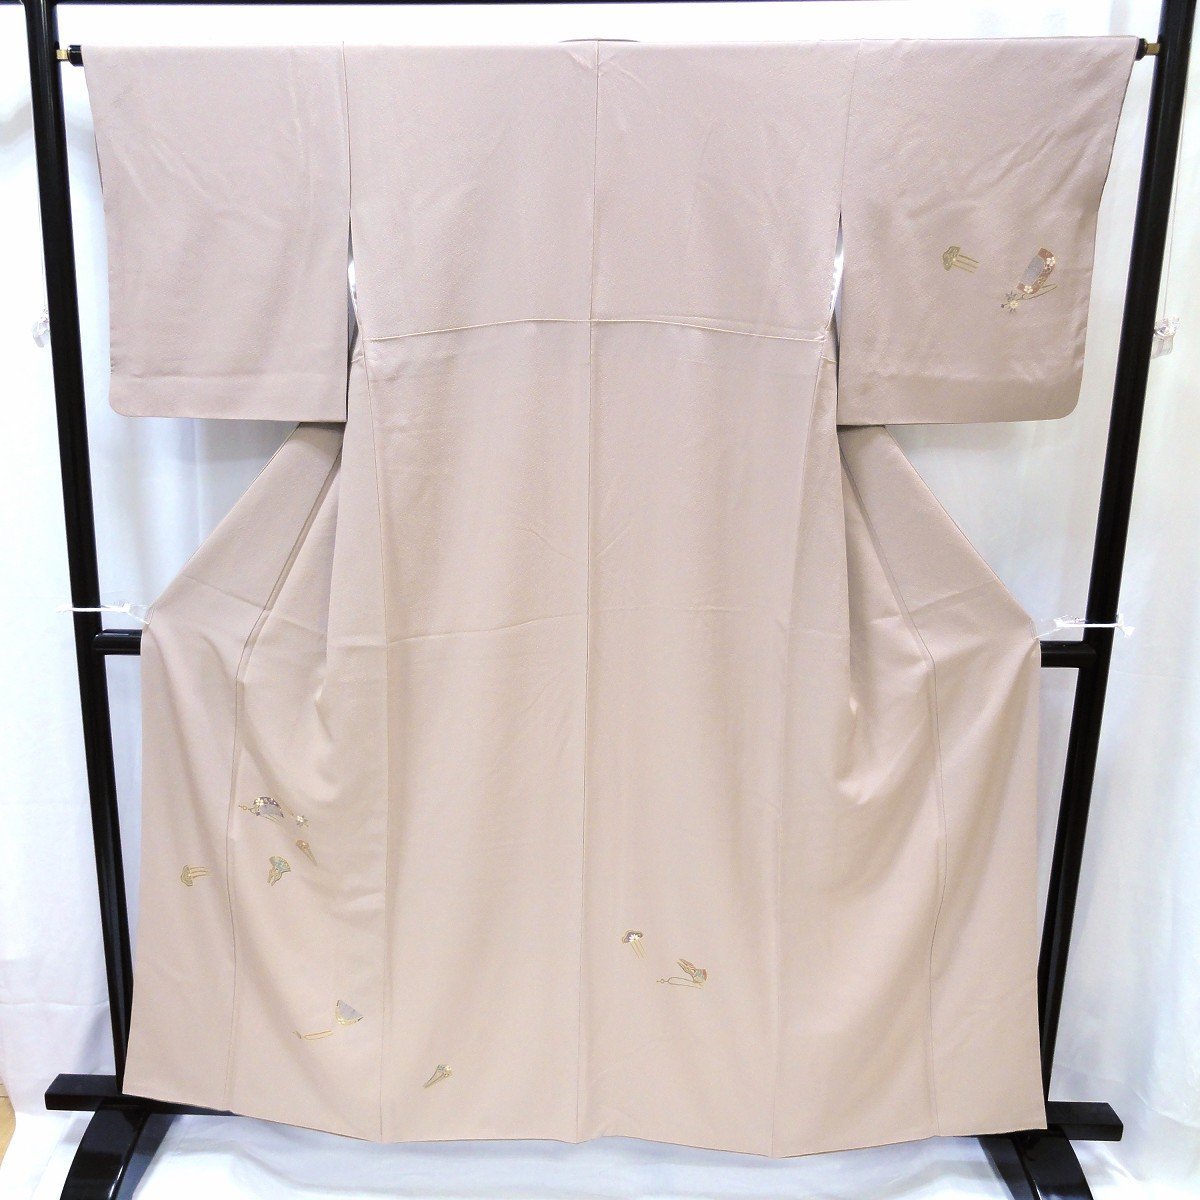 附下着物・付け下げ・櫛・簪・正絹・No.200701-0040・梱包サイズ80